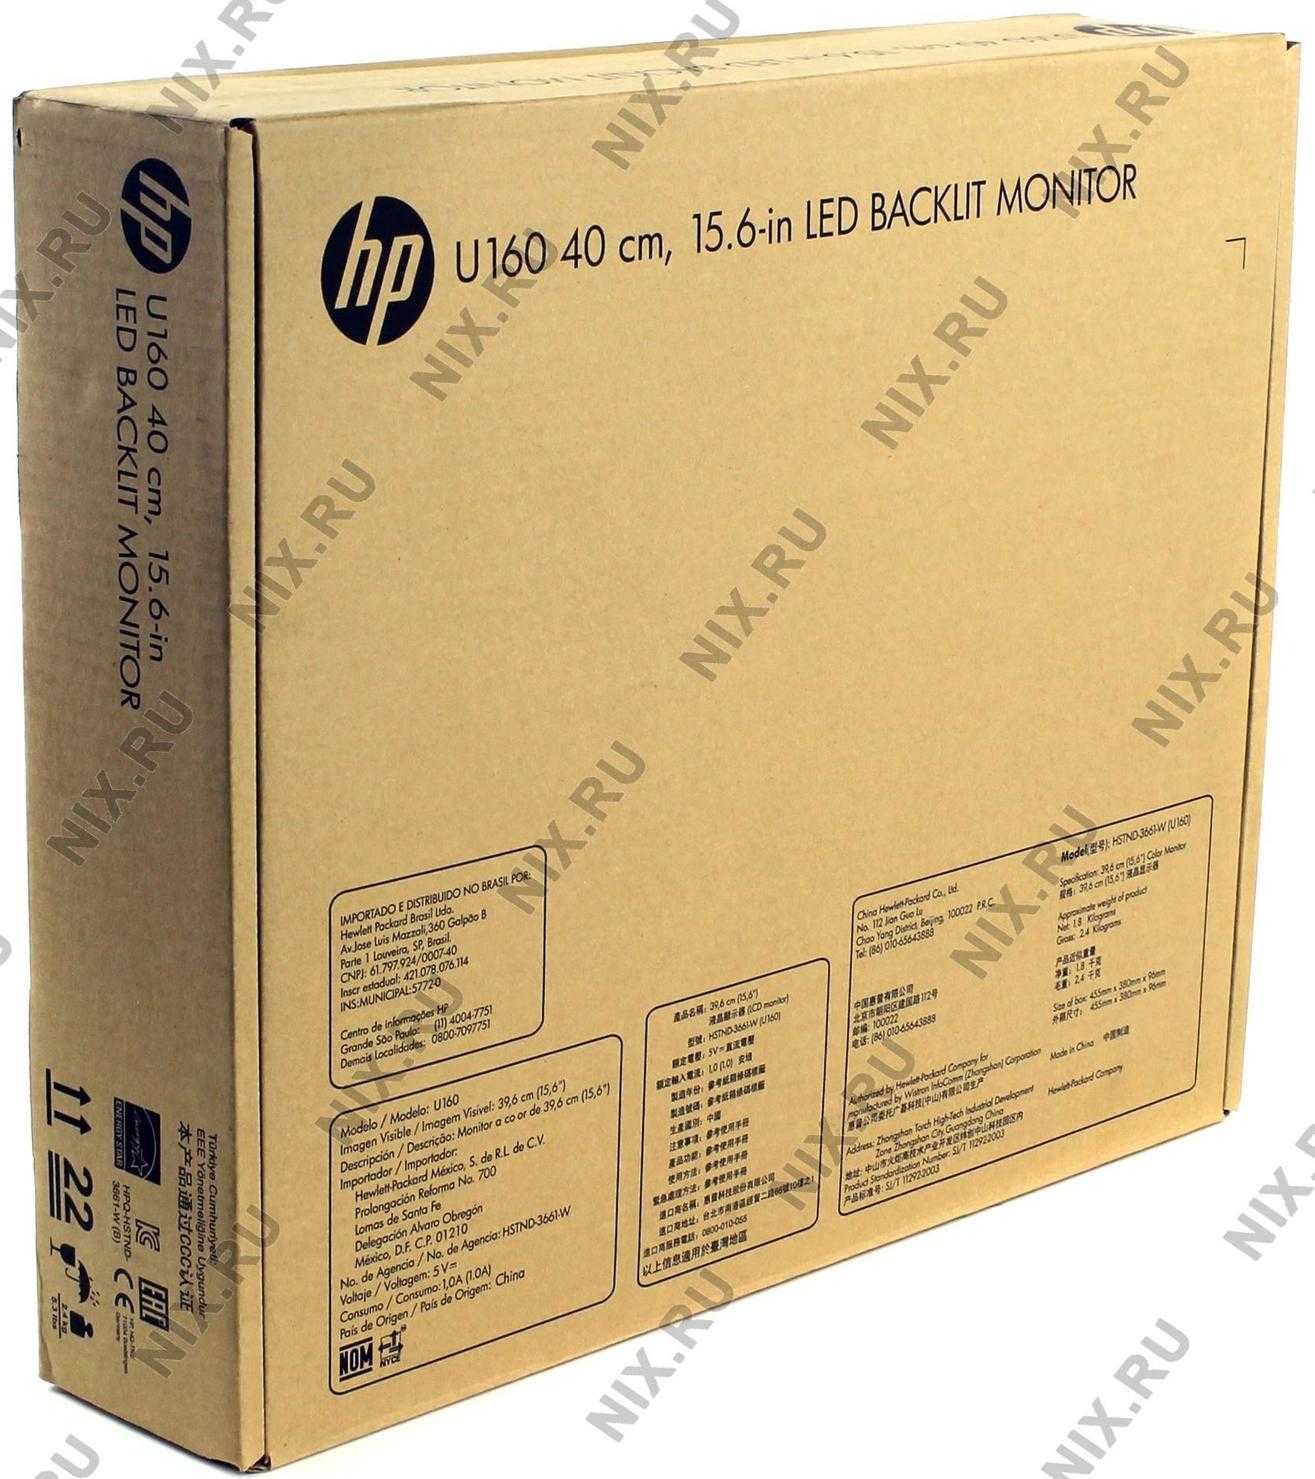 Жк монитор 15.6" hp u160 — купить, цена и характеристики, отзывы